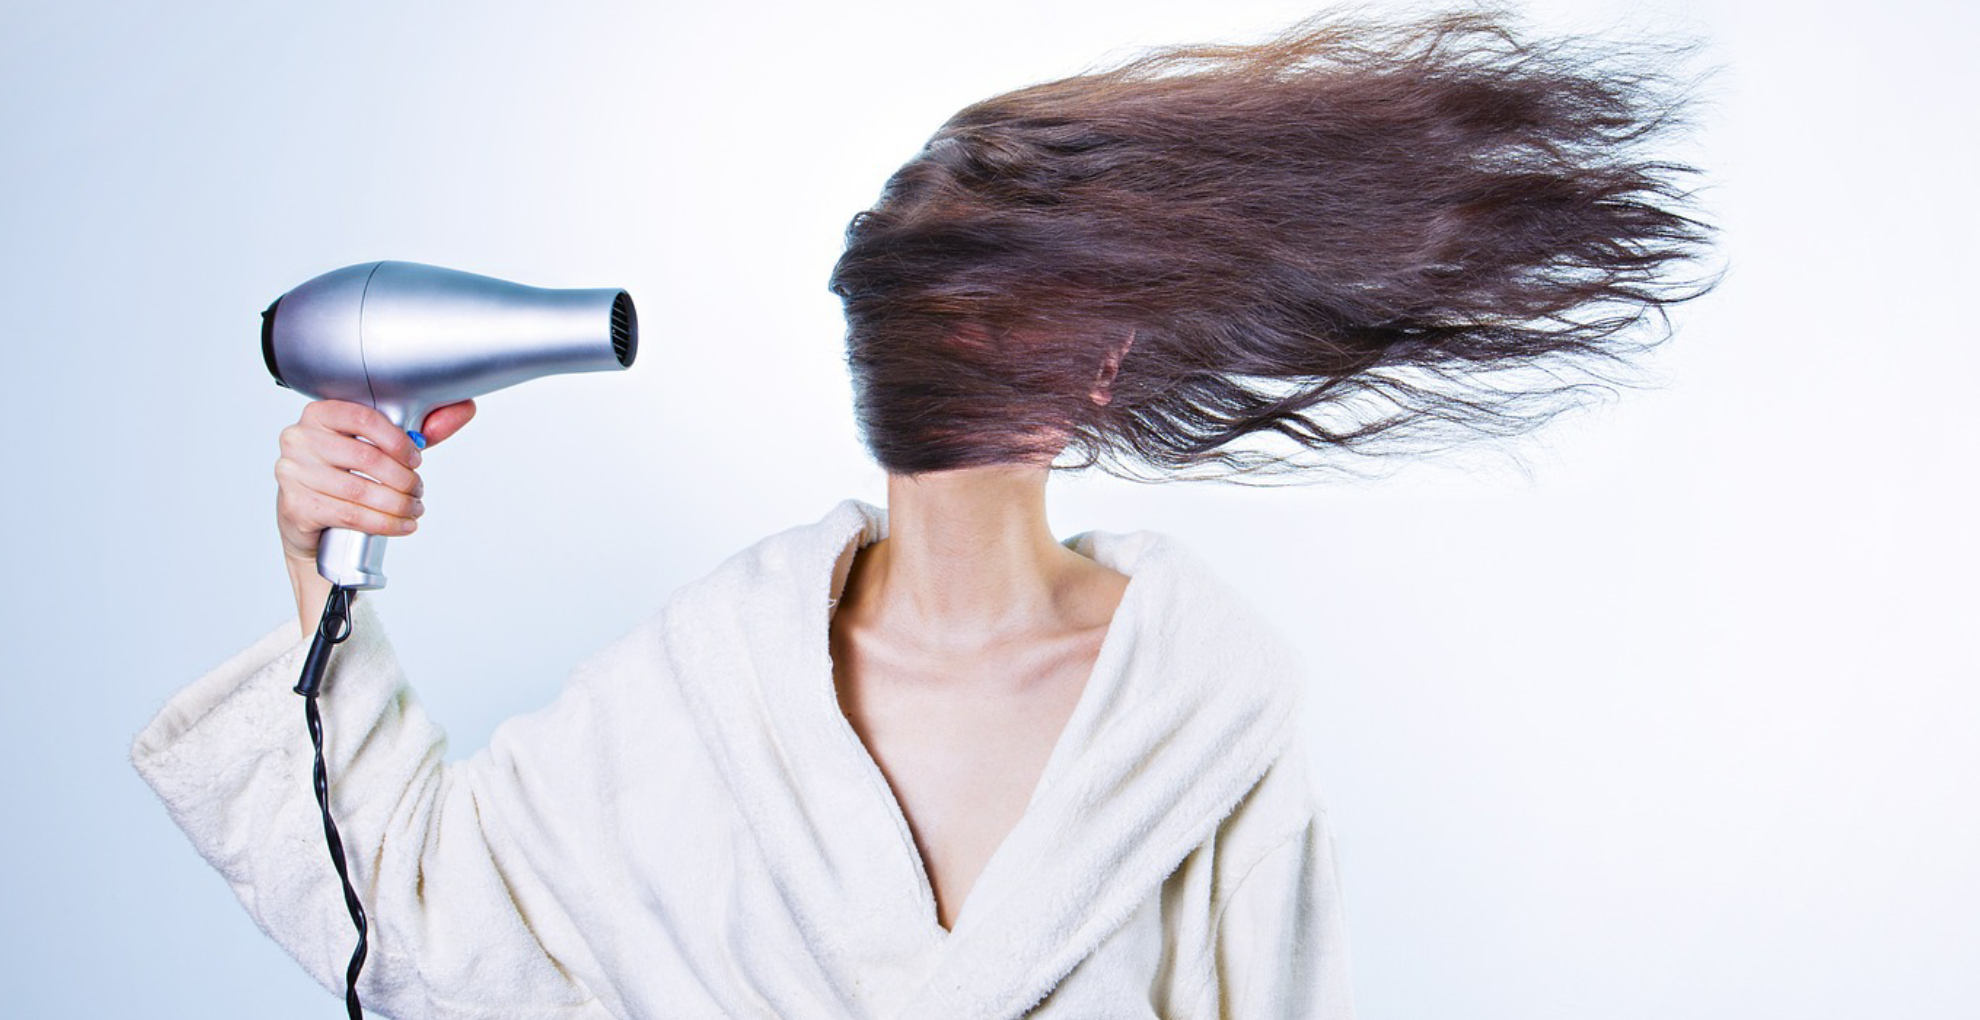 Hair Care Tips: ब्लो ड्रायर पर अब पैसे खर्च करने की नहीं है जरूरत, इन ट्रिक्स से झटपट सुखाएं बाल